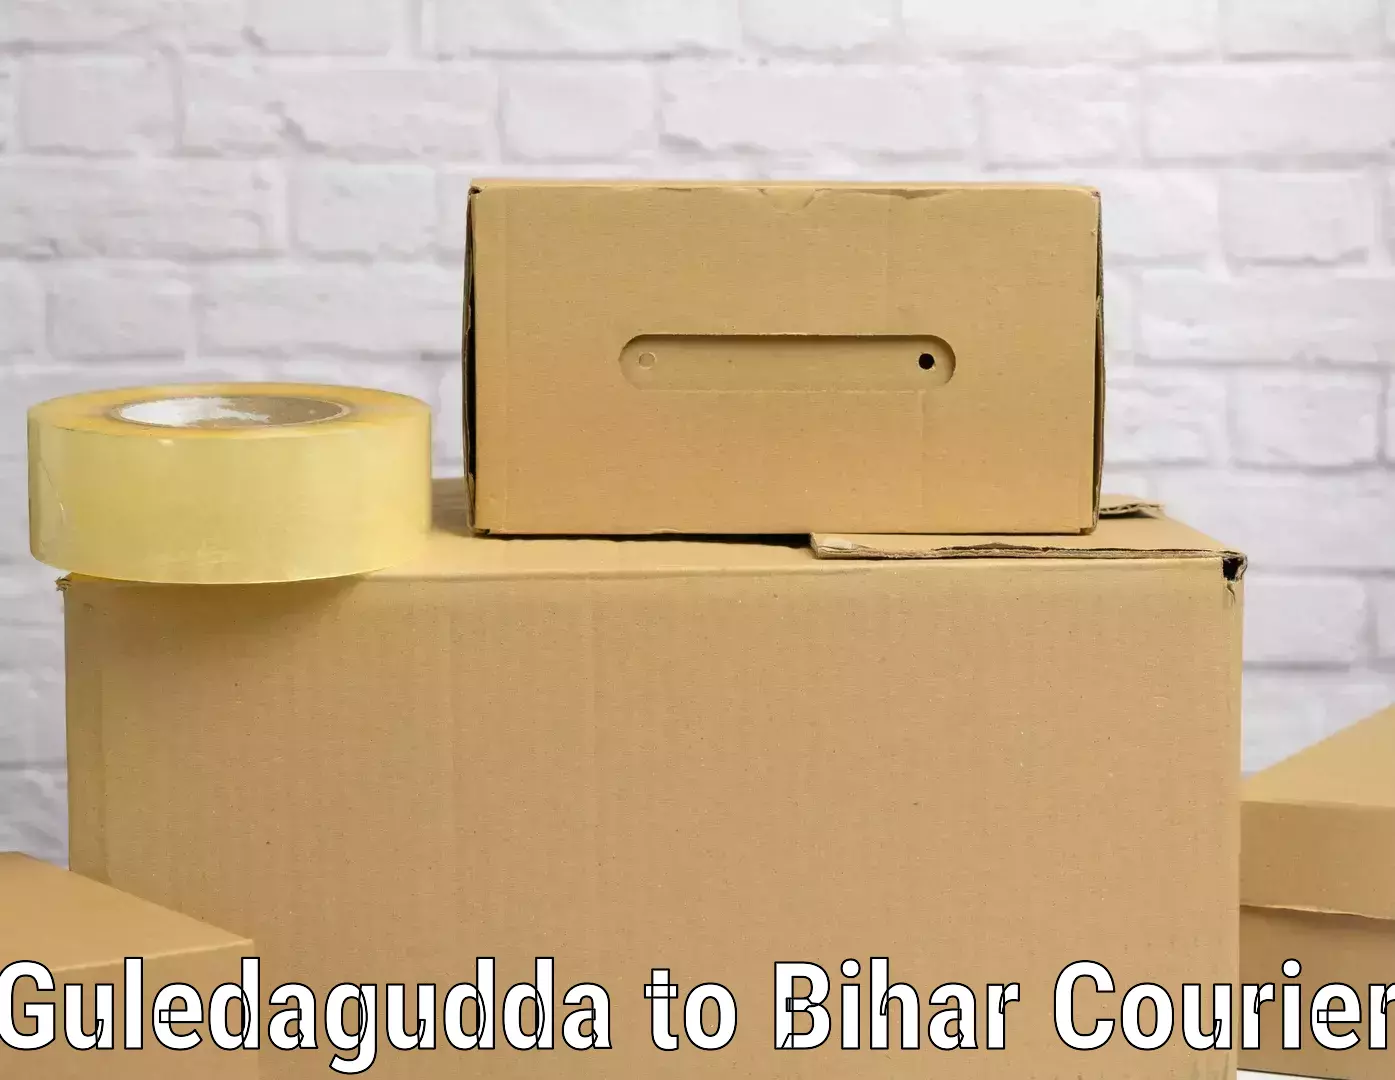 Luggage shipping efficiency Guledagudda to Bihar